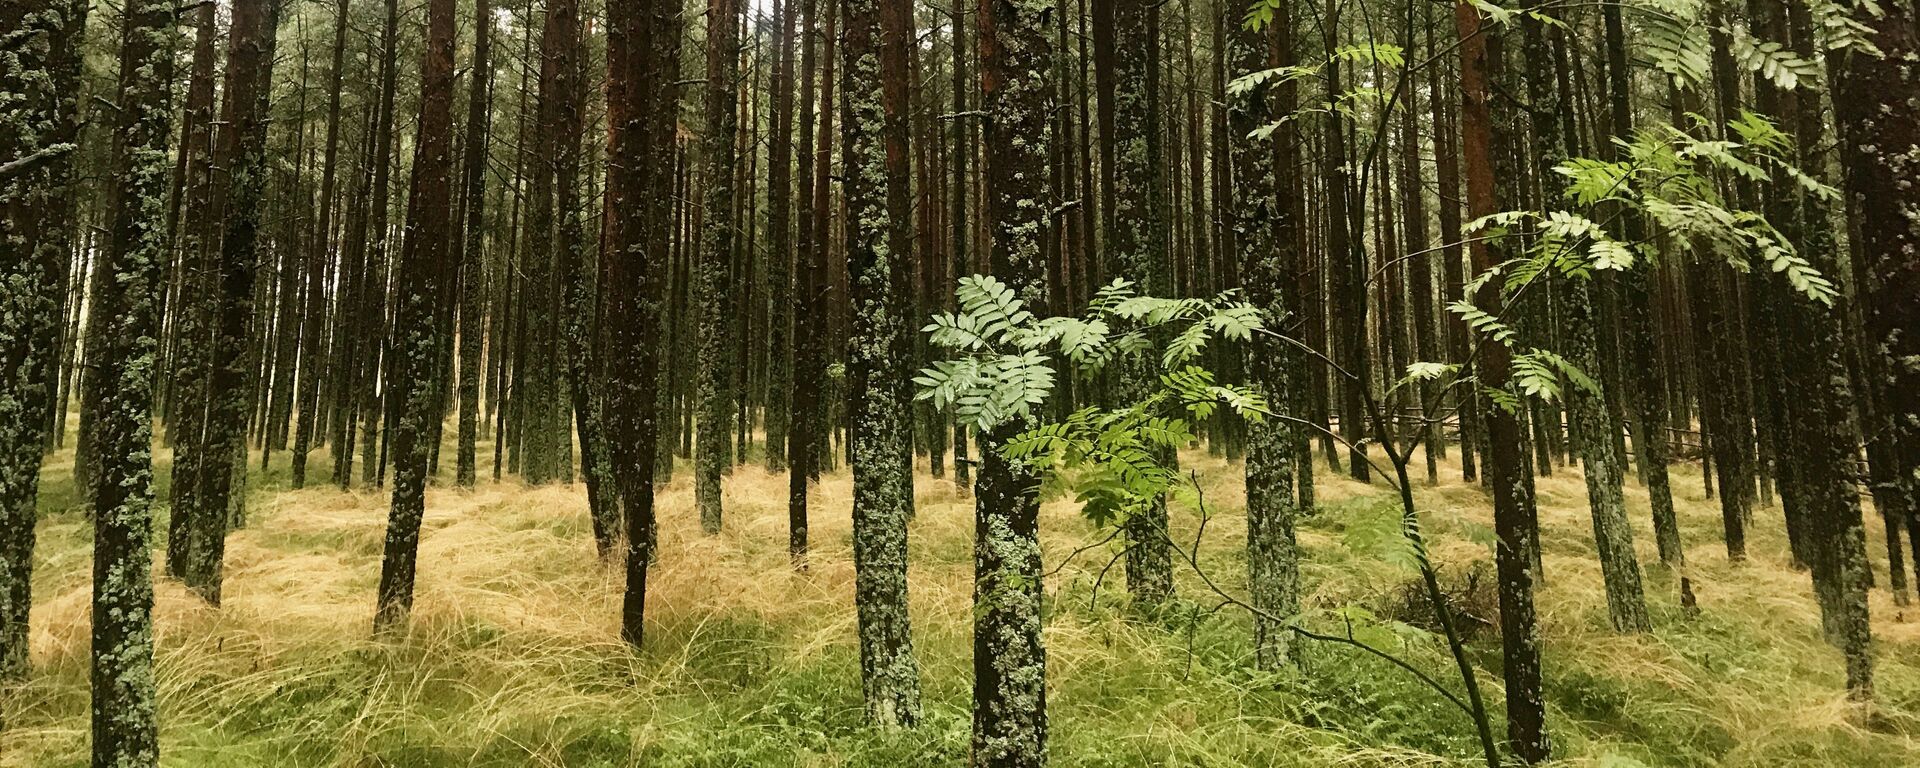 Los bosques del Parque Natural del Istmo de Curlandia son Patrimonio de la Unesco - Sputnik Mundo, 1920, 16.03.2021